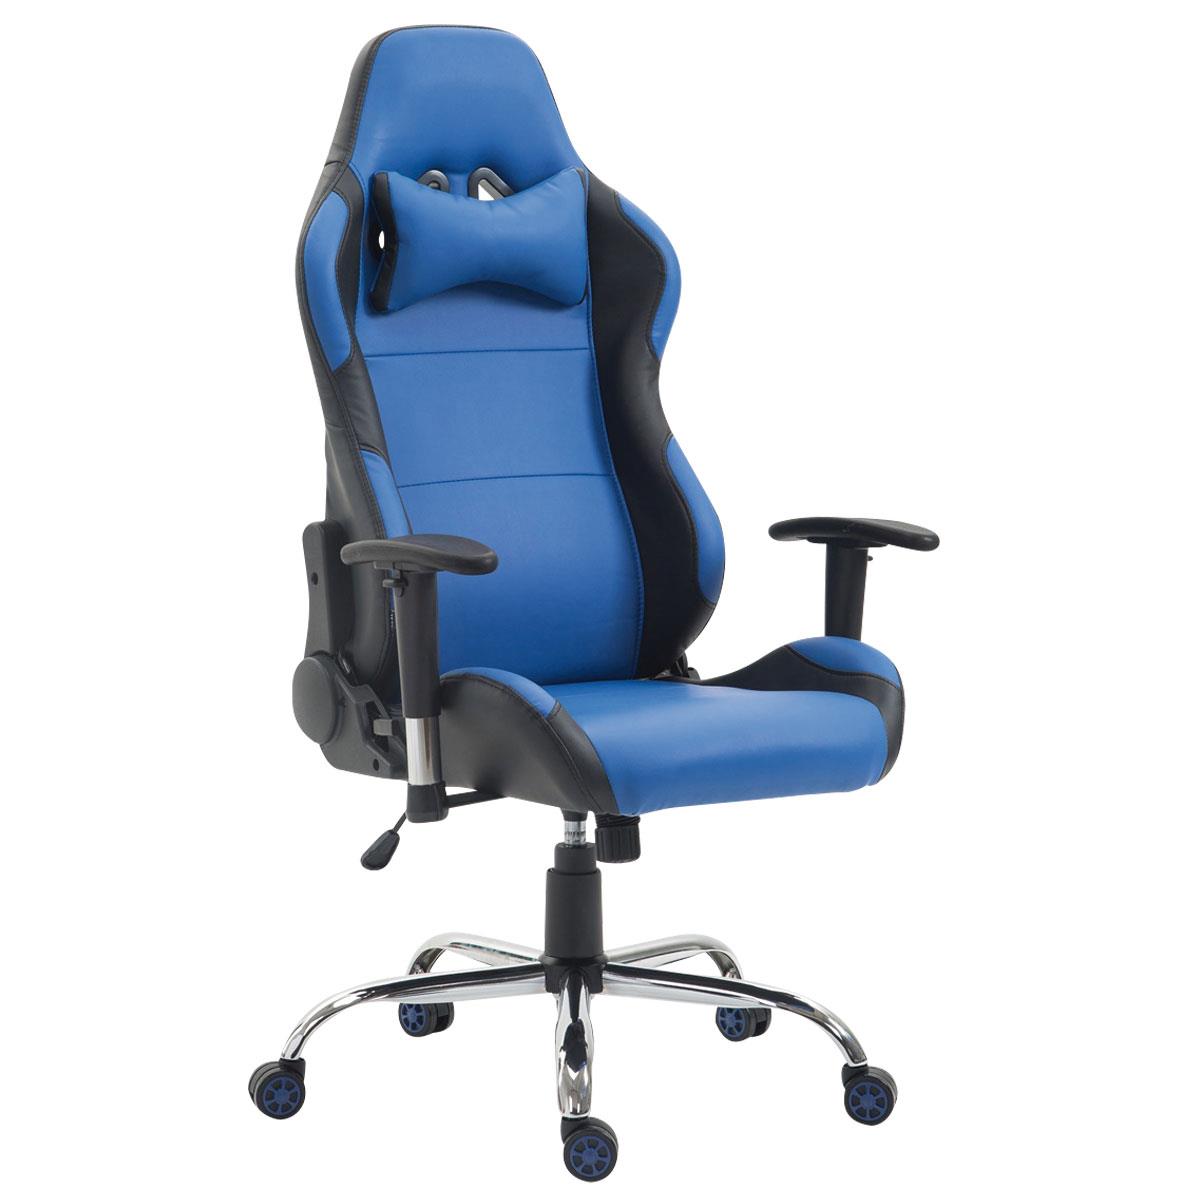 Gaming-Stuhl ROSBY. Sportliches Design und hoher Komfort, Lederbezug, Farbe Blau